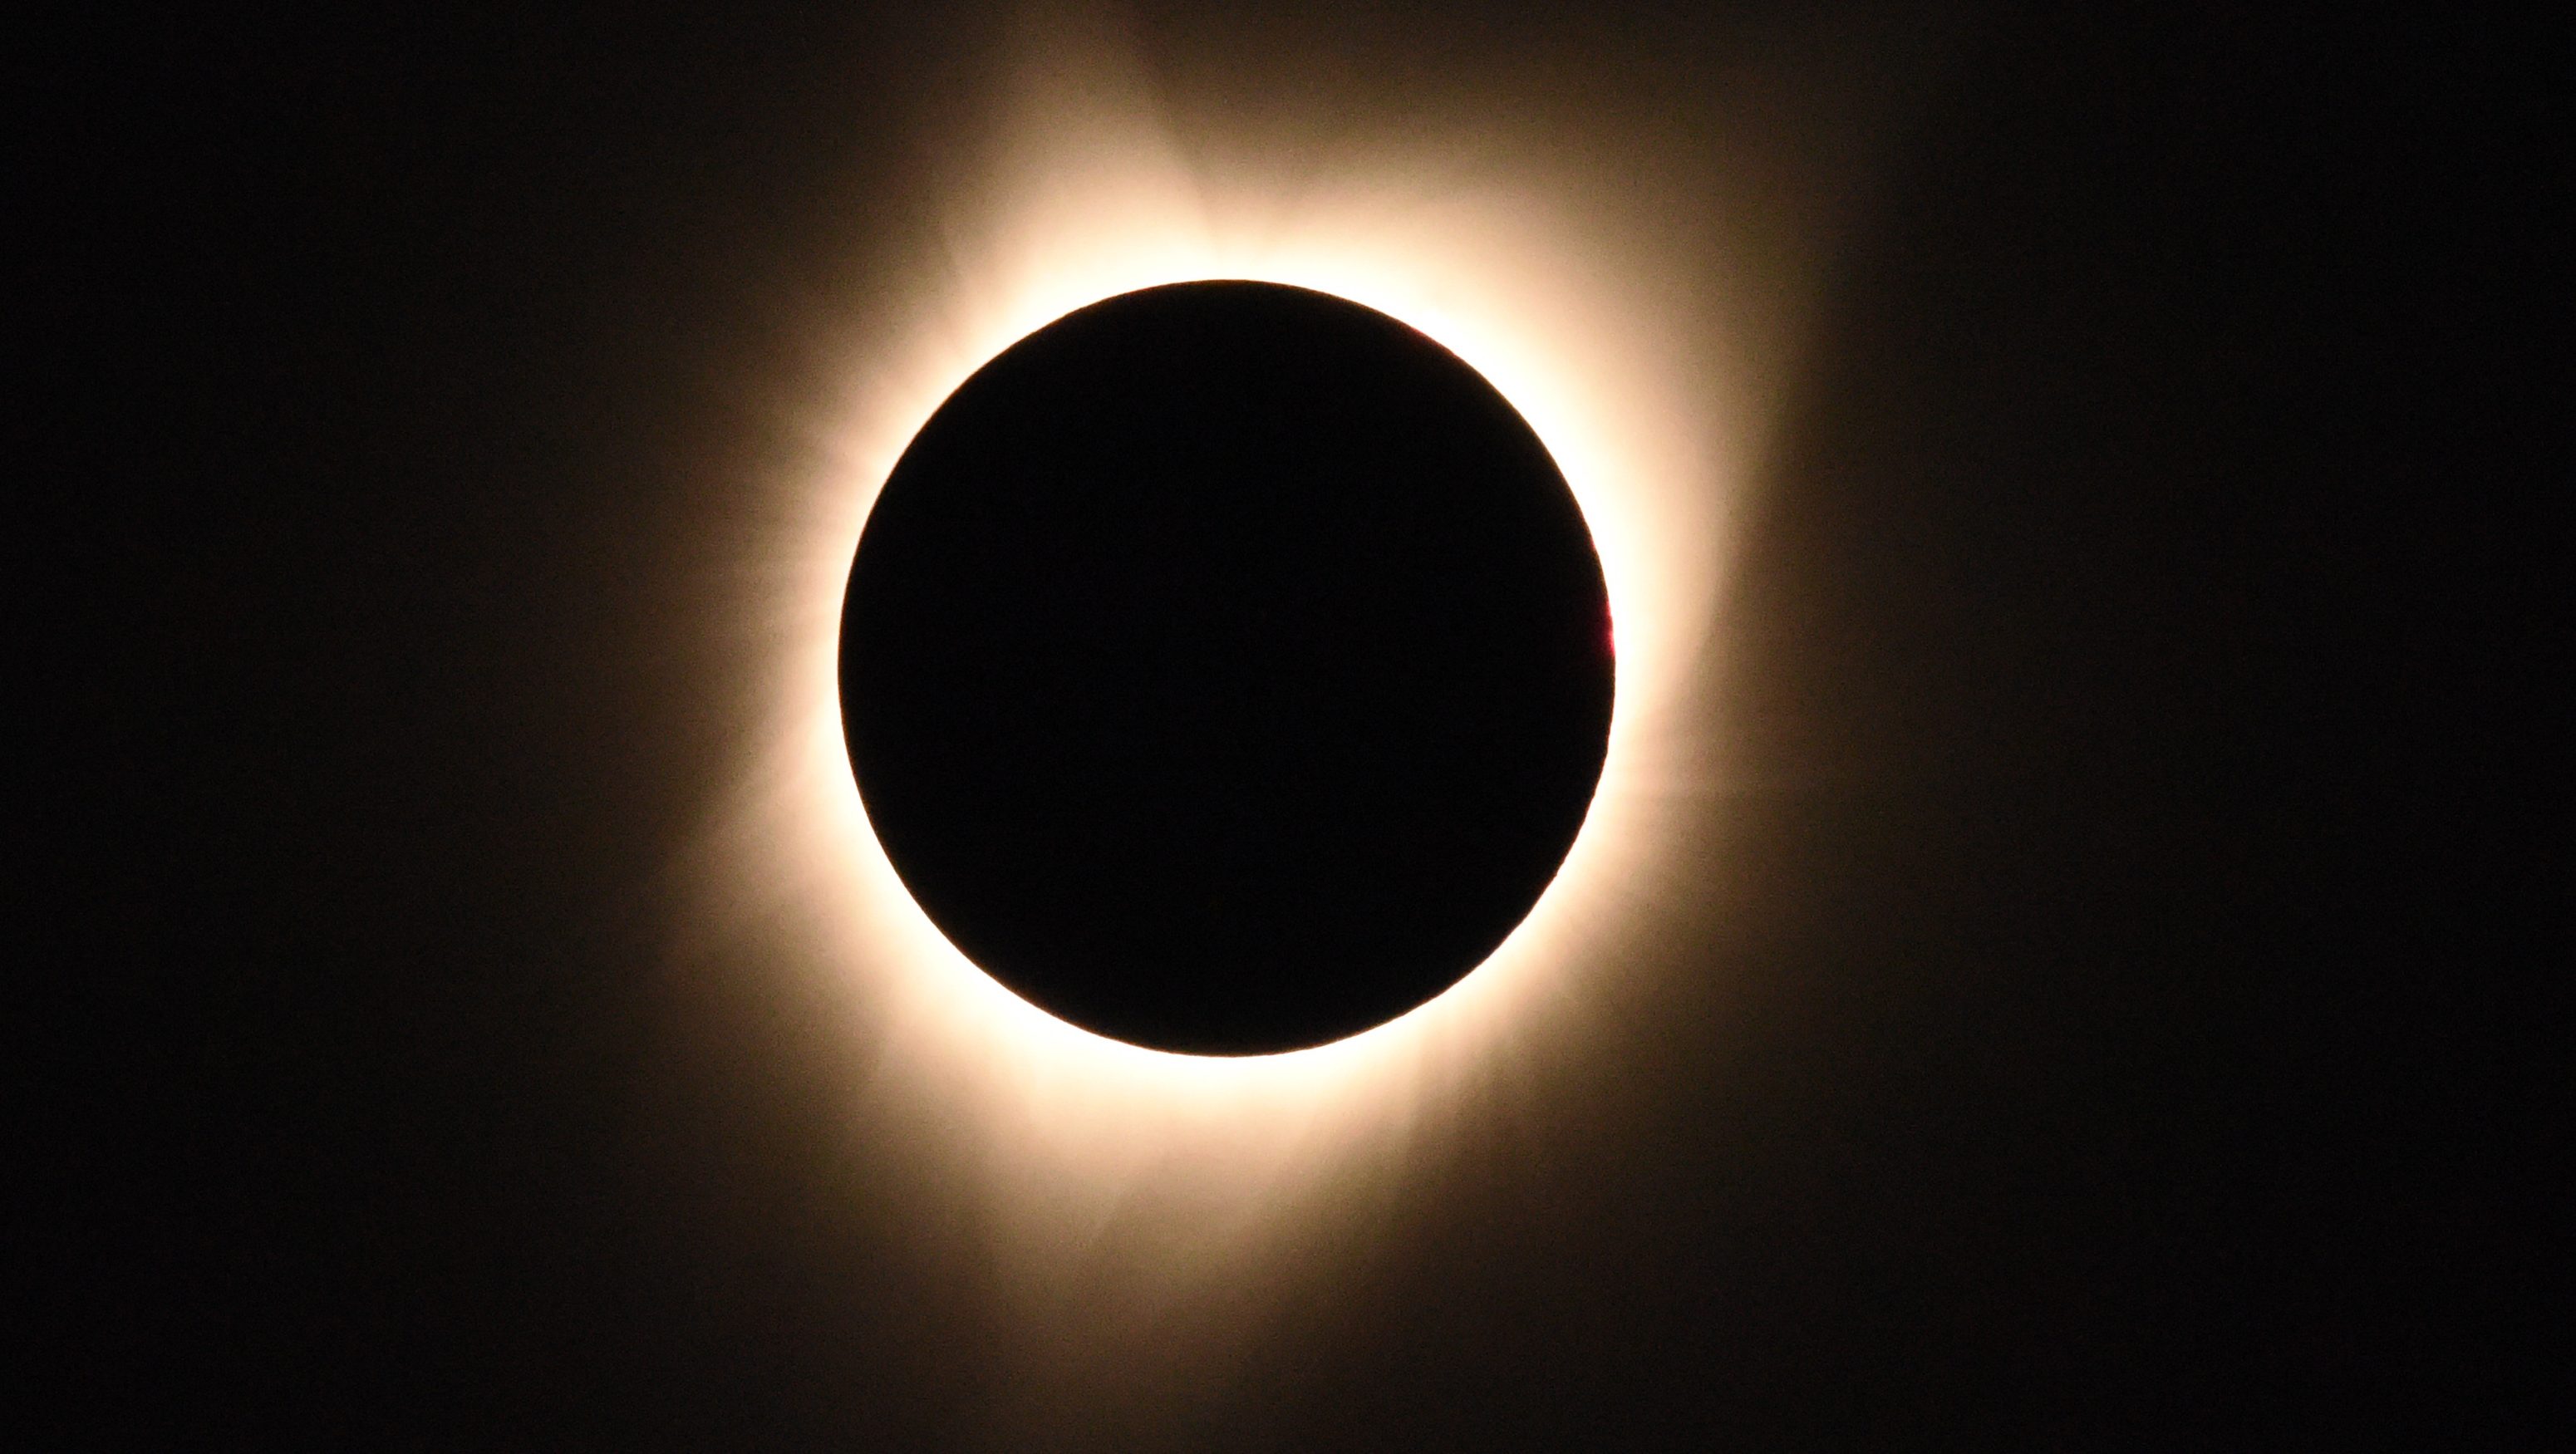 Solar Eclipse Live Stream Watch the Eclipse Online